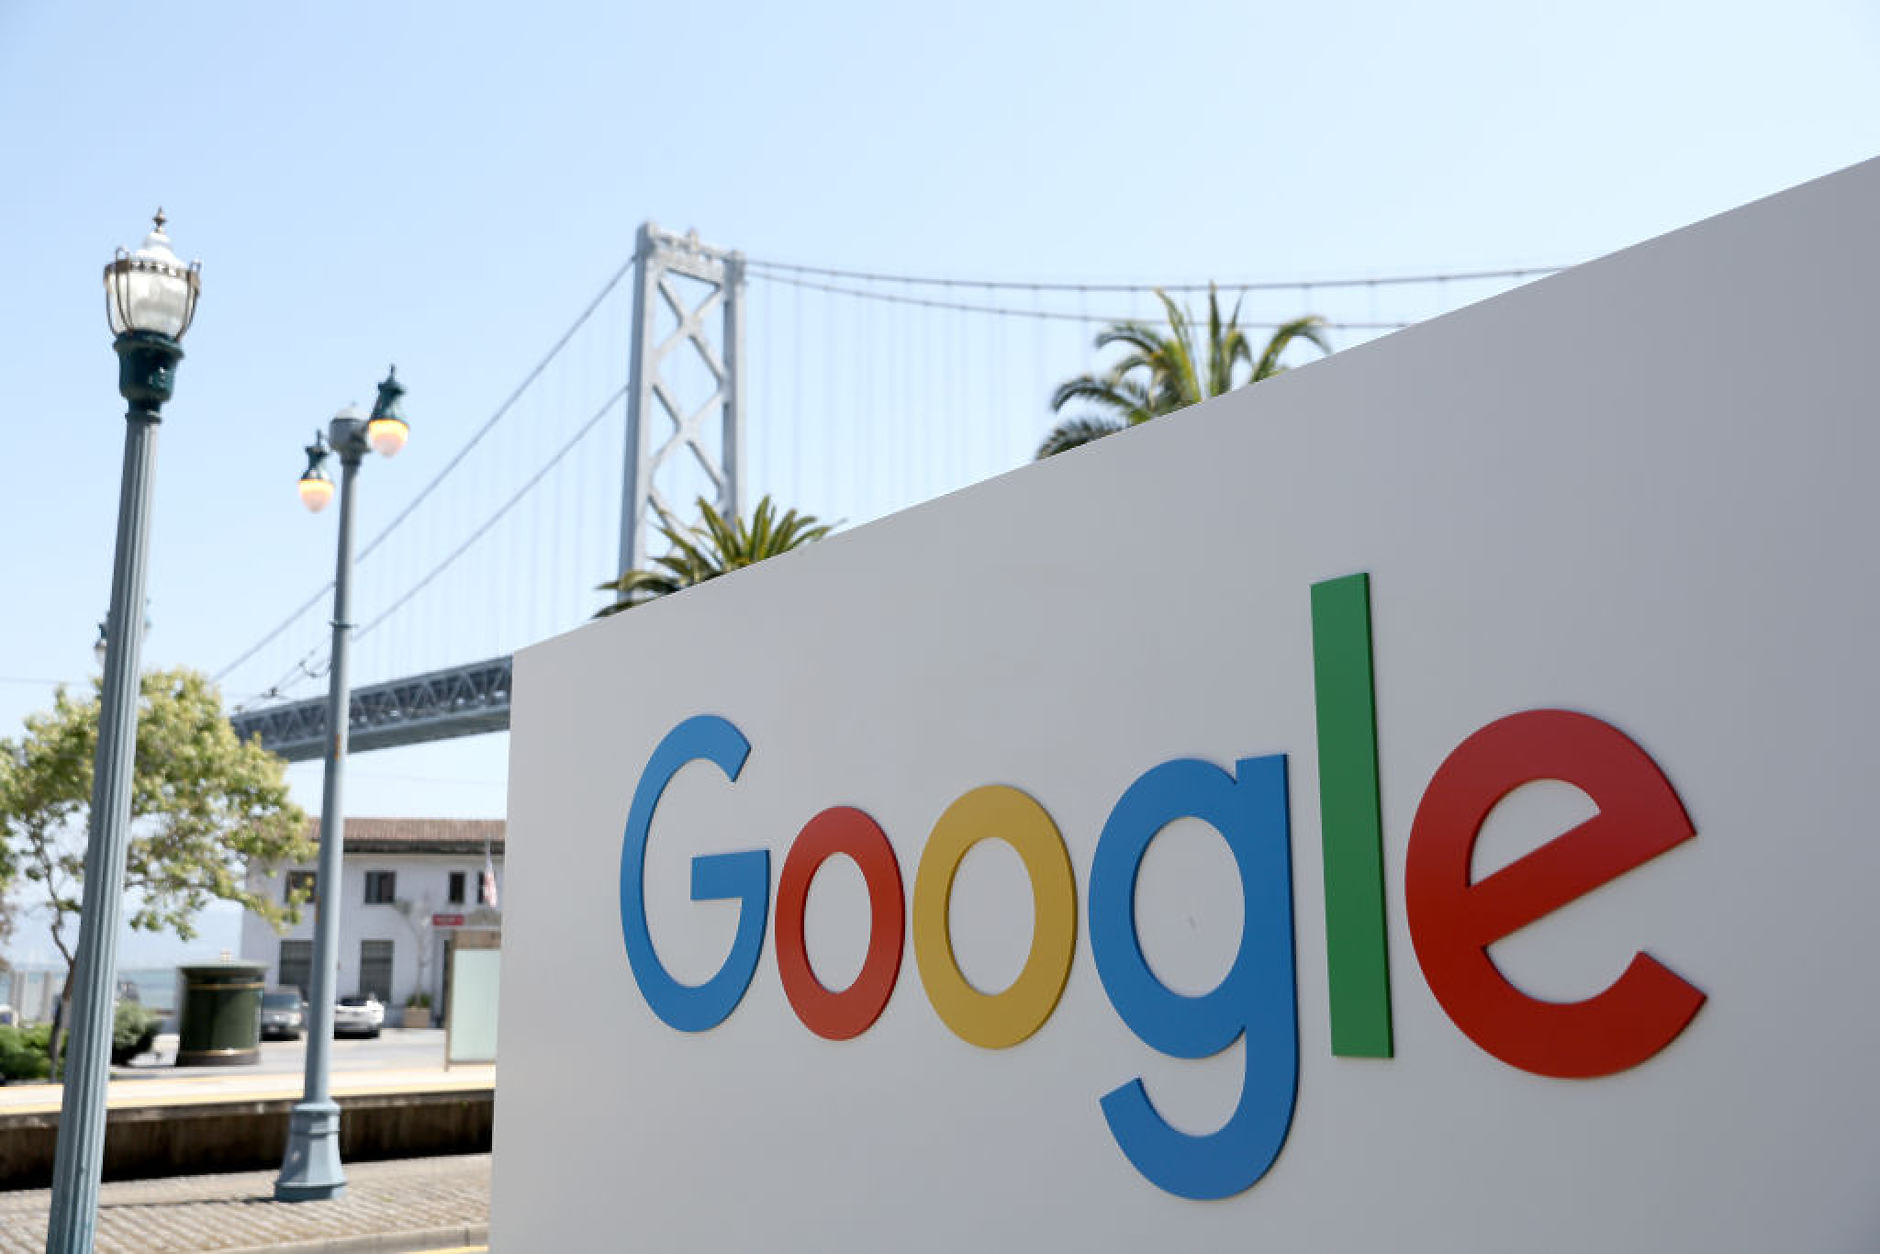 Google плаща 700 млн. долара на потребители и щати в САЩ по антитръстово споразумение